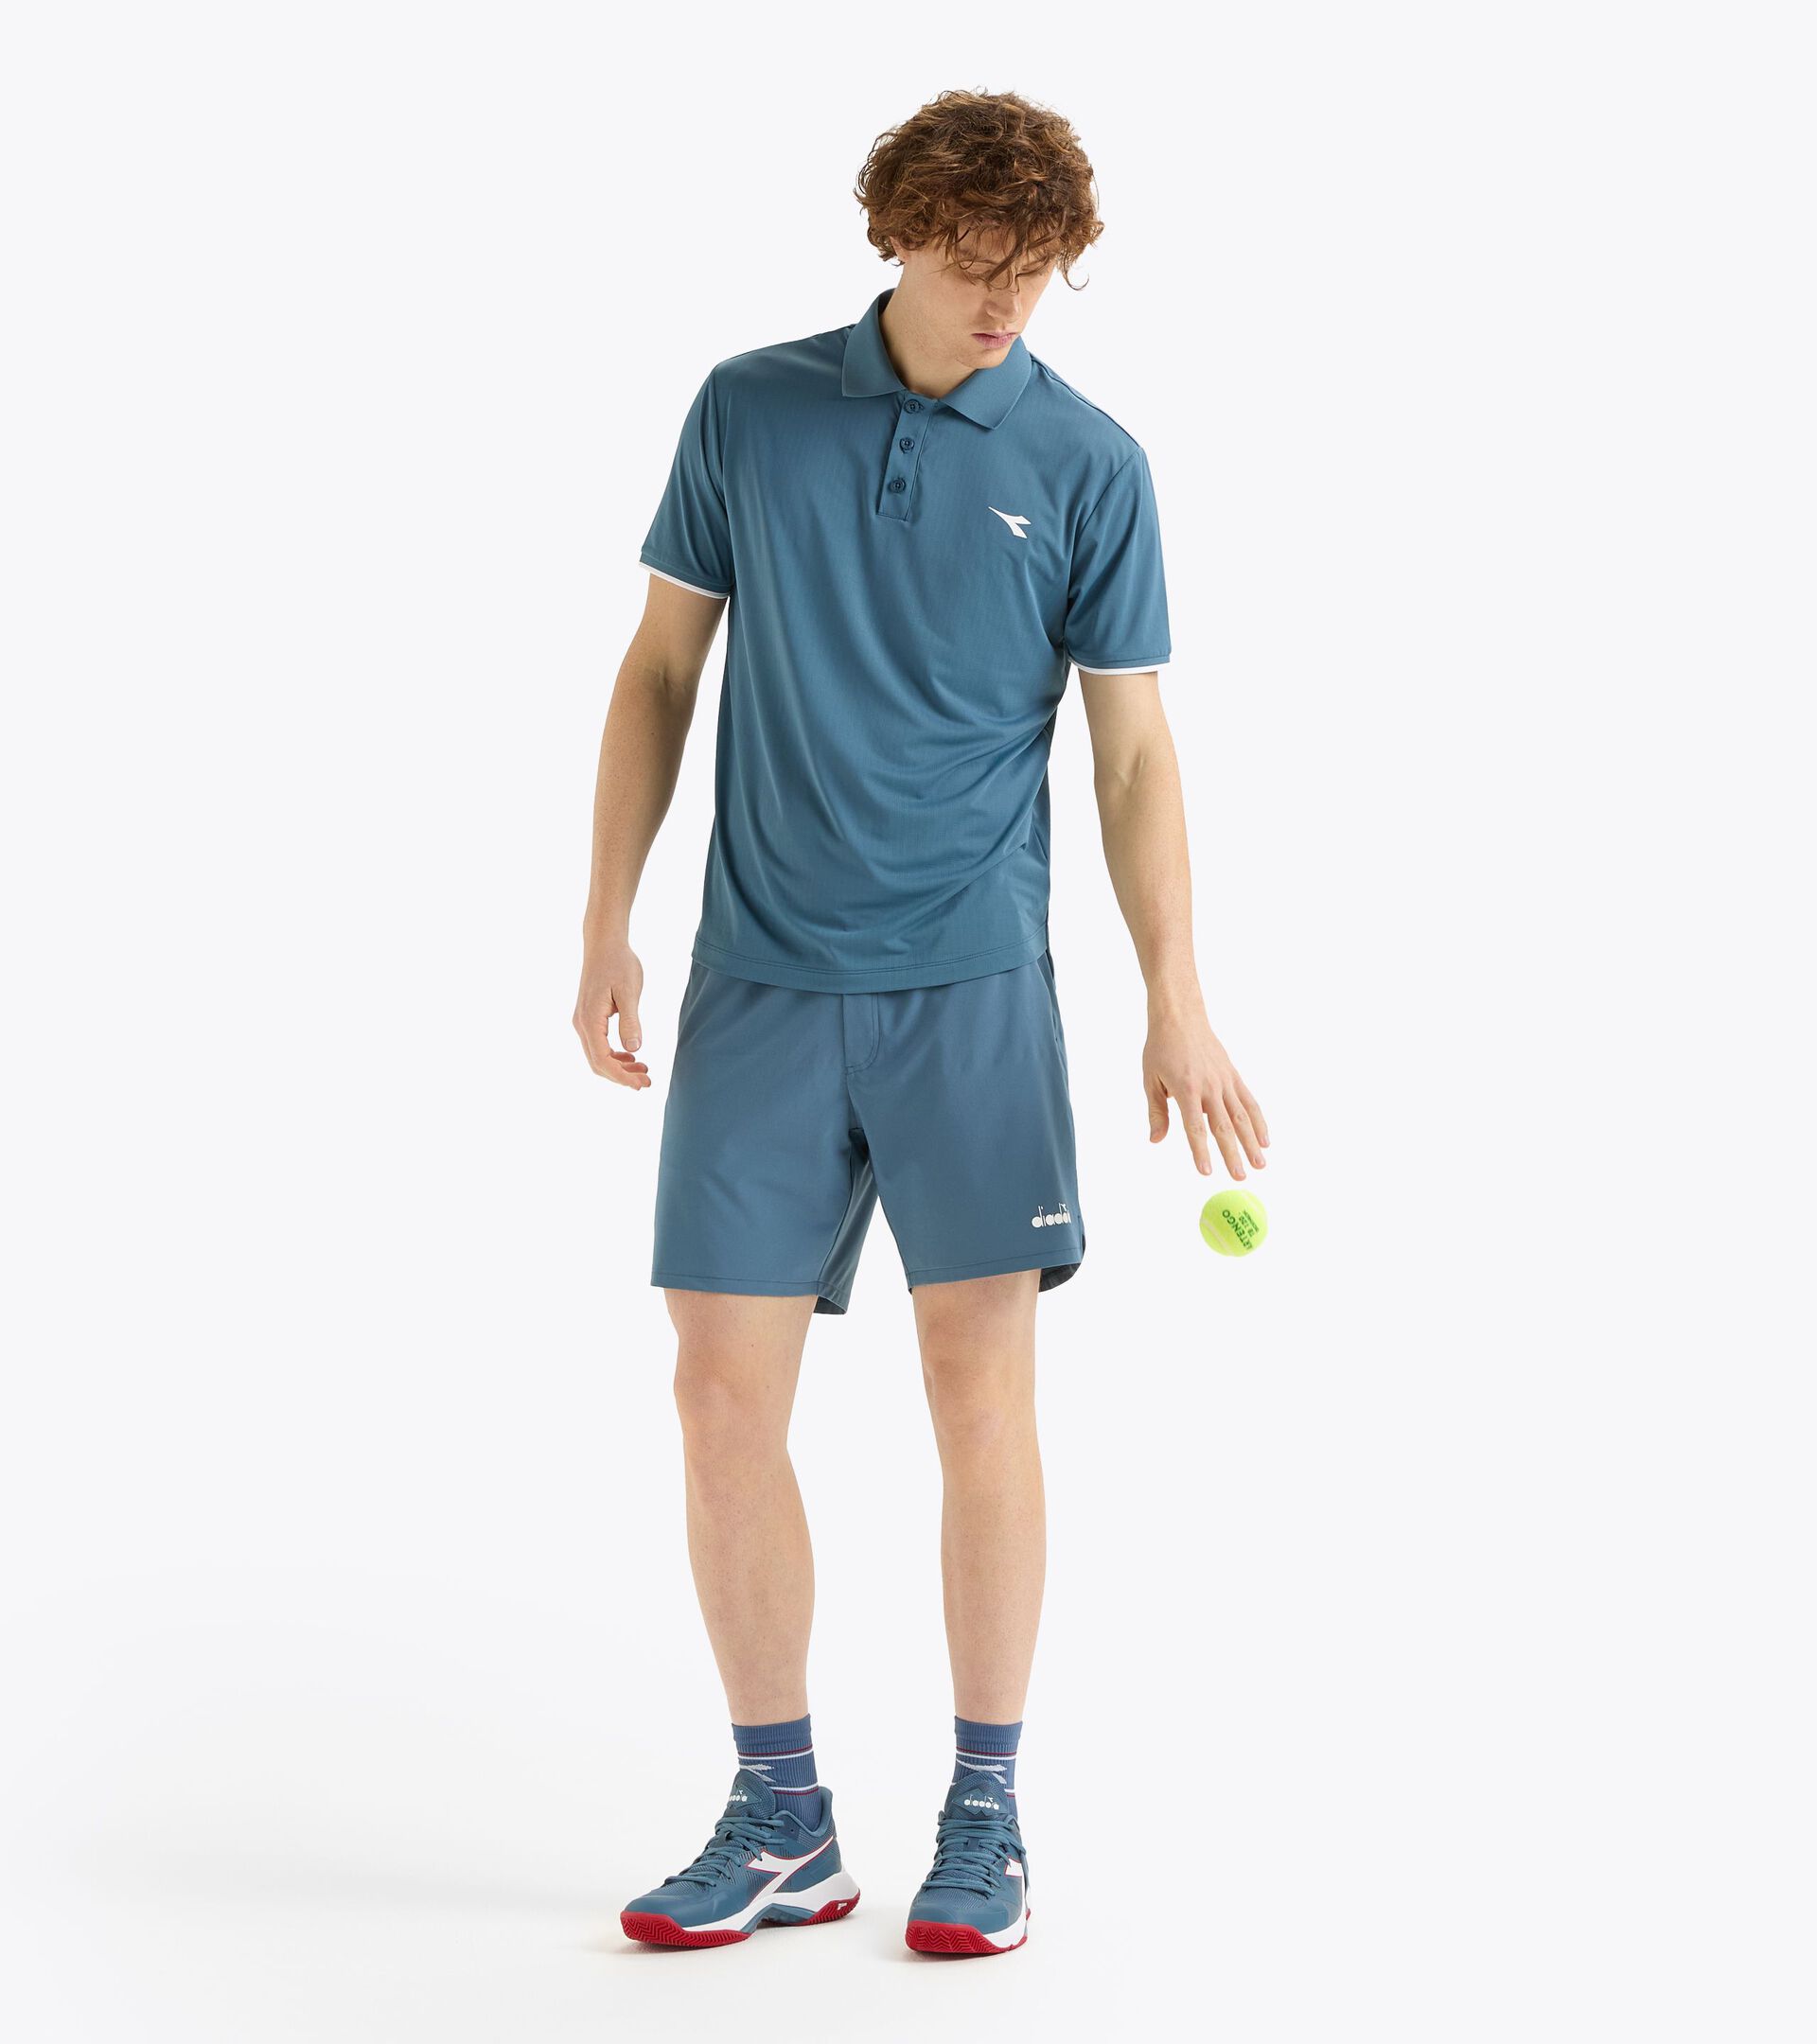 7’’ tennis shorts - Men’s
 SHORTS ICON 7" OCEANVIEW - Diadora